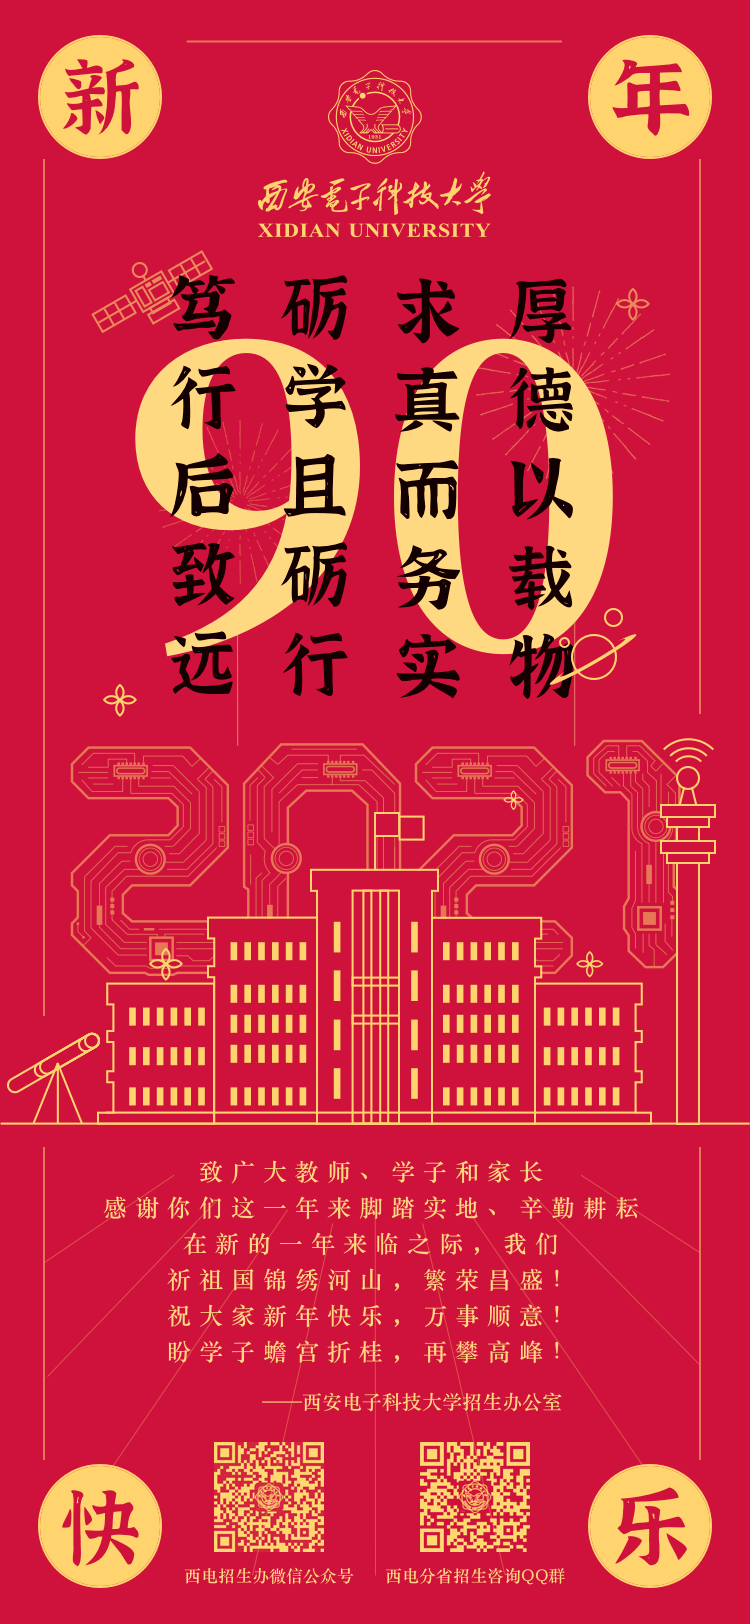 2021喜迎新春 | 西安电子科技大学招生办公室恭祝大家新年快乐!